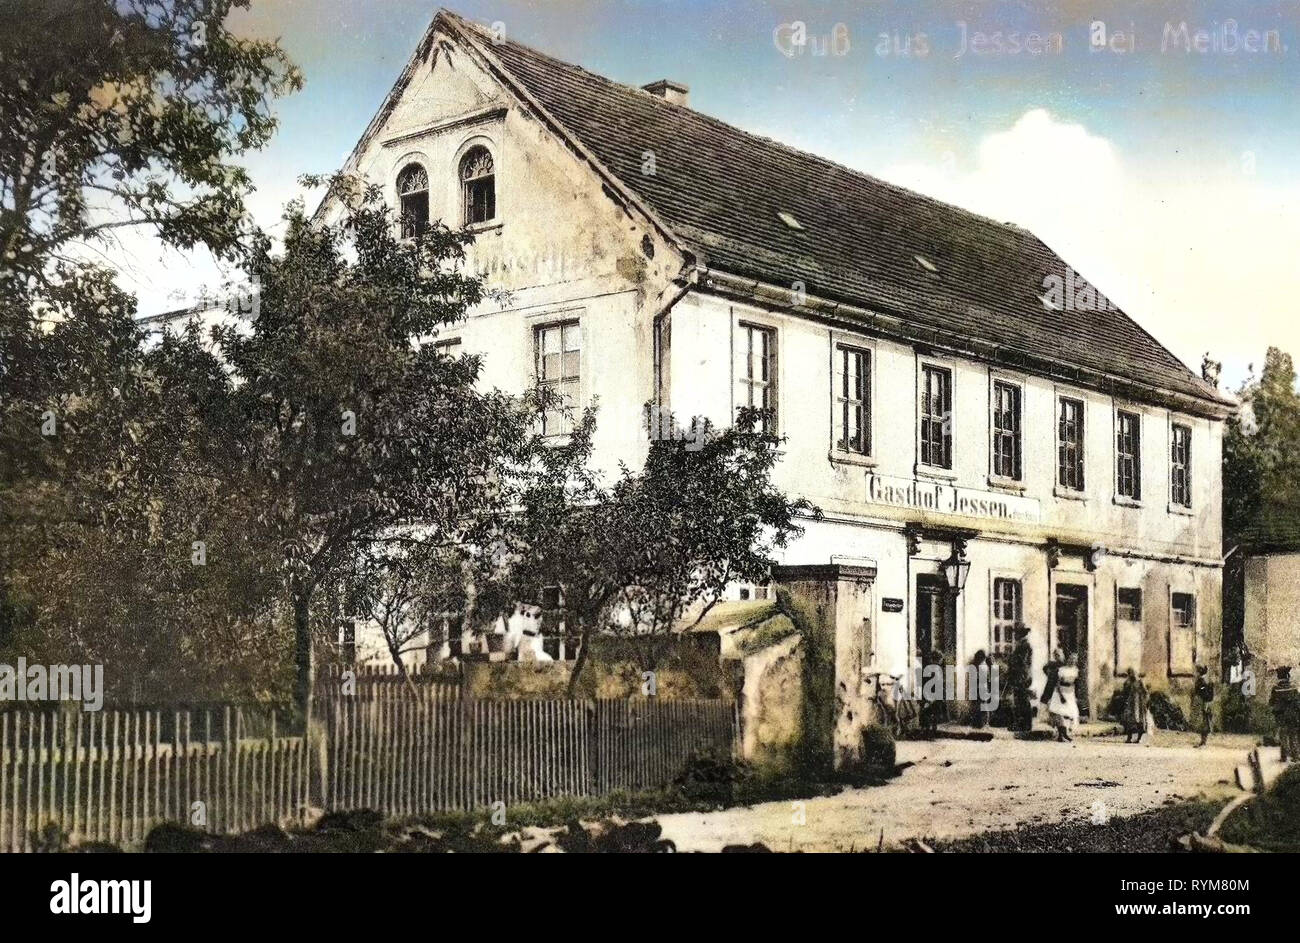 Restaurants im Landkreis Meißen, Jessen (Niederau), 1903, Landkreis Meißen, Jessen, Gasthof, Jessen bei Meißen, Deutschland Stockfoto